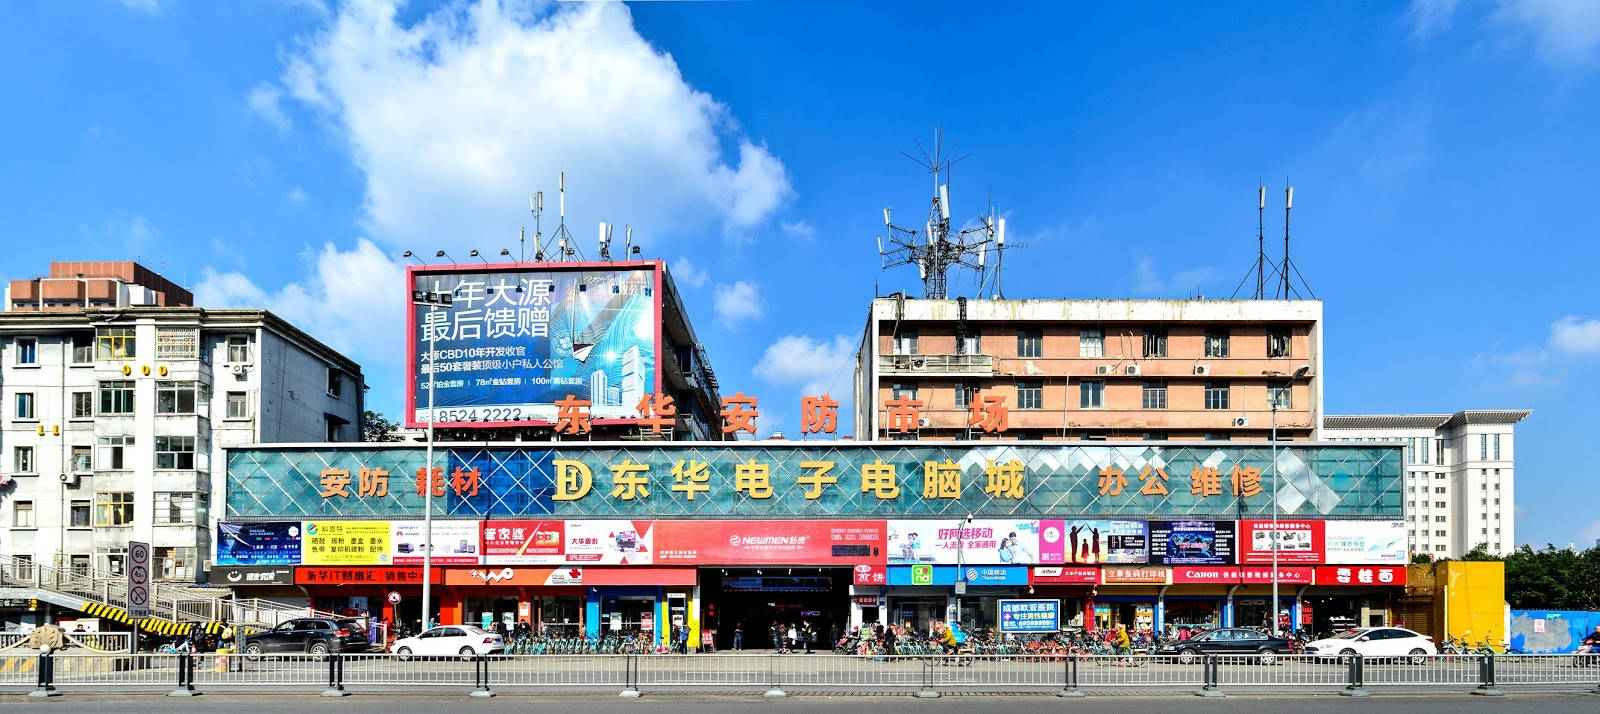 Chengdu Market: Fantastiske gallerier af det lokale marked. Wallpaper